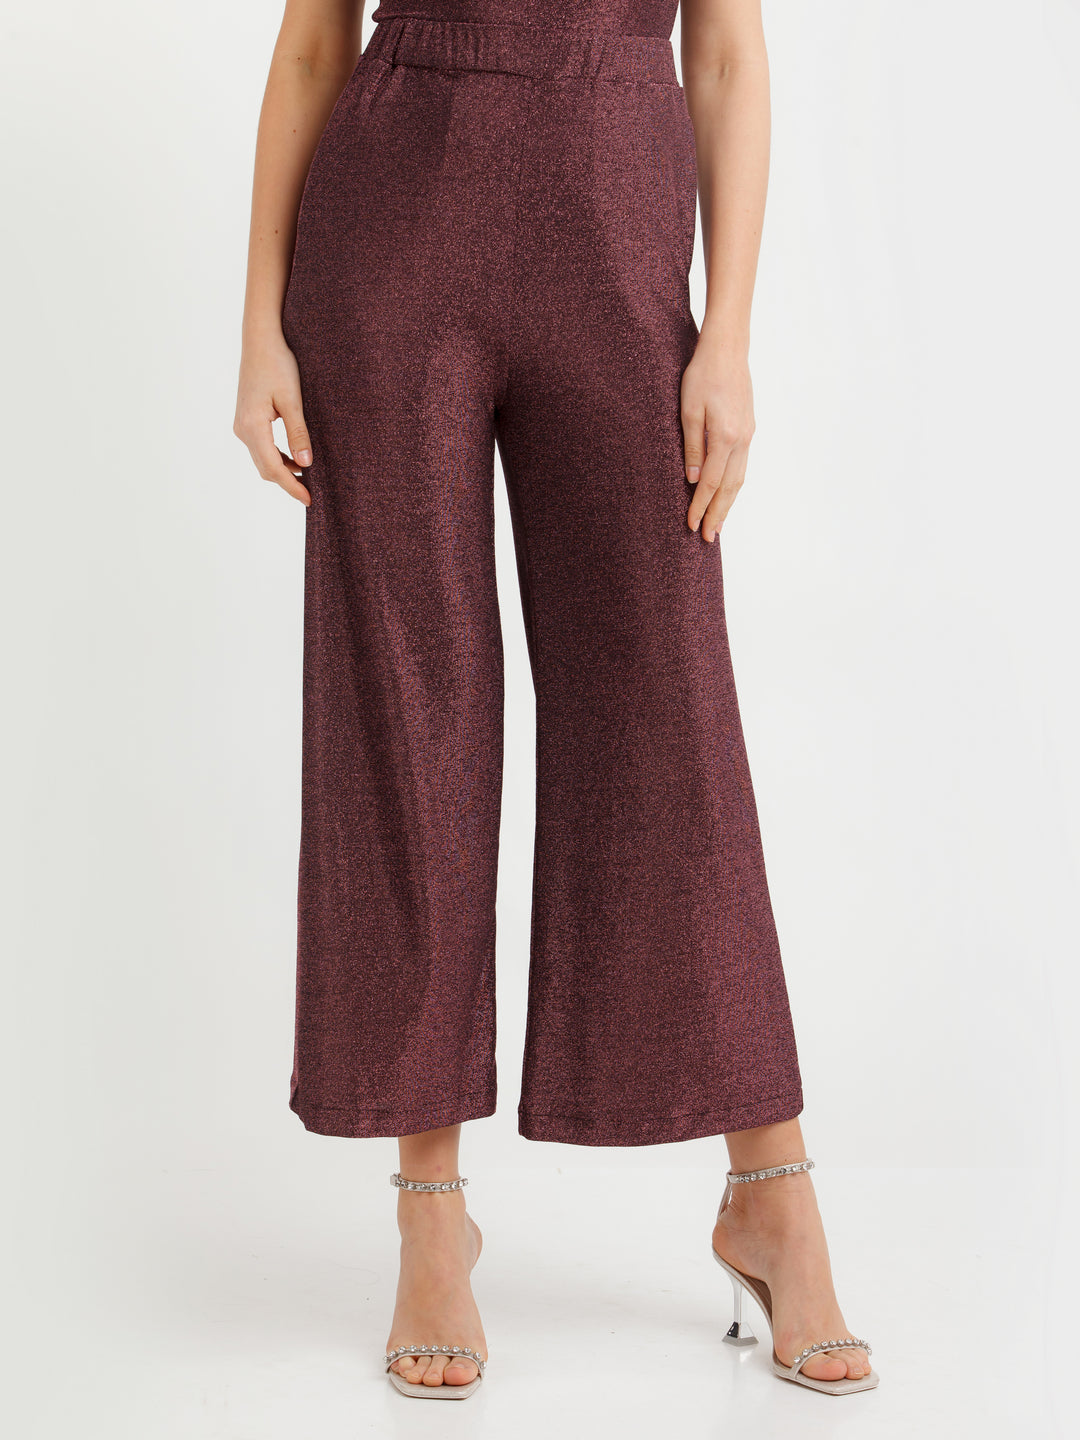 Women Velvet Pants Wide Leg Plazzo Trousers Drawstring Elastic Waist Lounge  | eBay